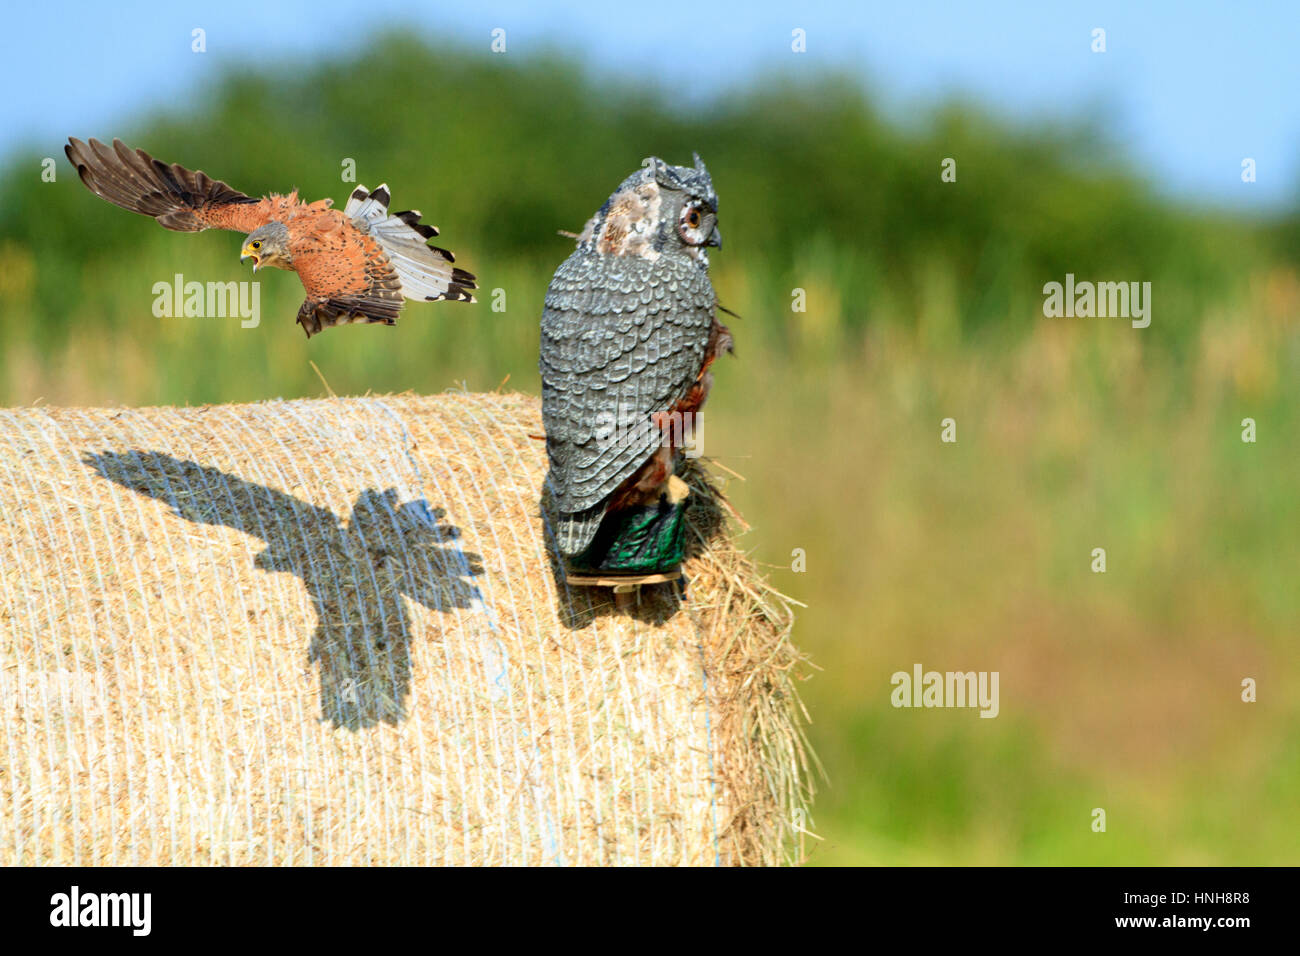 Il Gheppio (Falco tinnunculus), attaccando un gufo decoy. Foto degli uccelli. Foto Stock